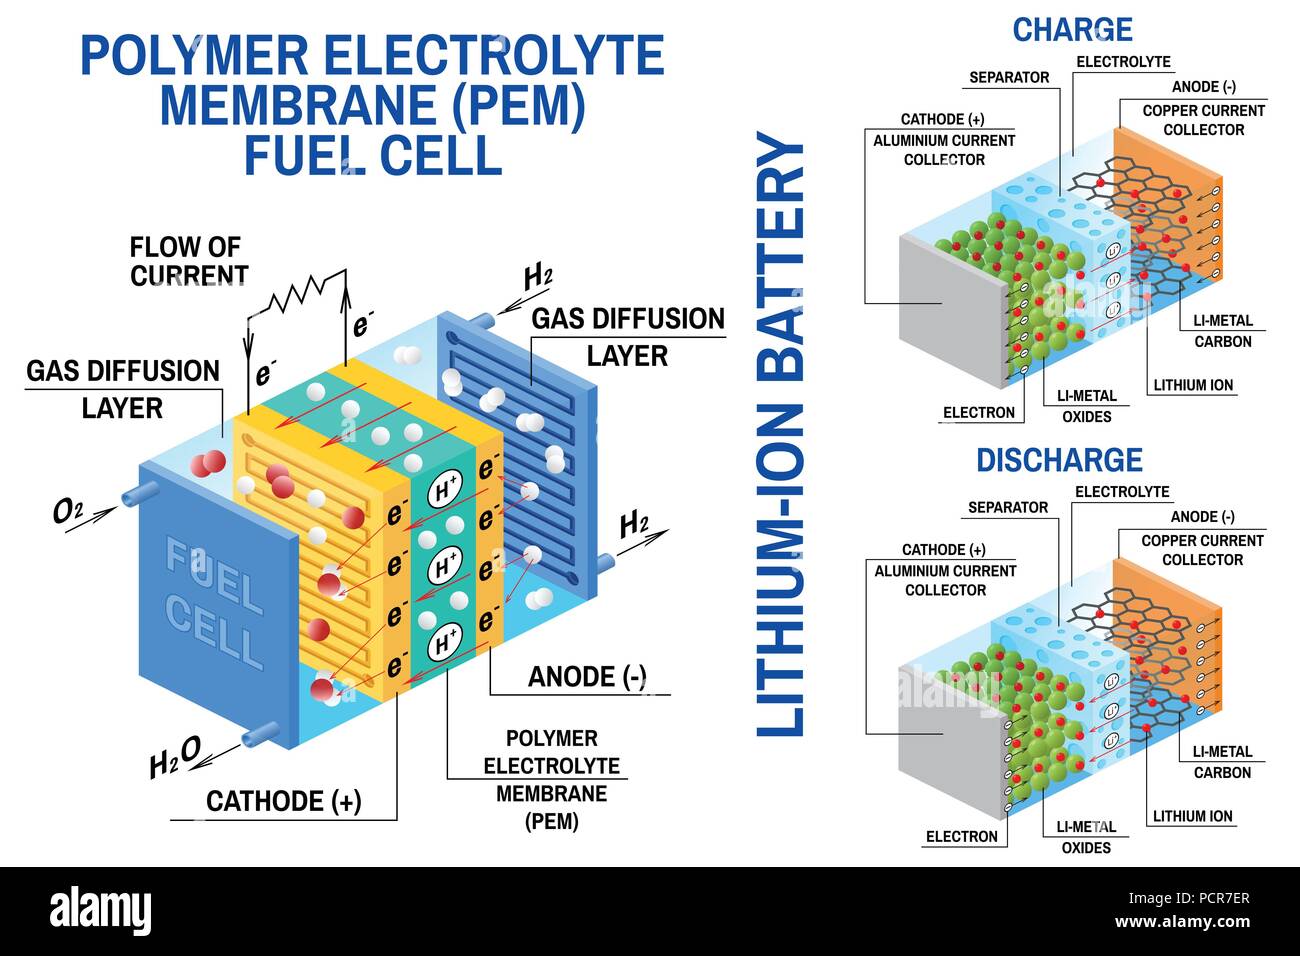 Brennstoffzelle und Lithium-Ionen-Akku Abbildung. Vektor. Gerät, das wandelt chemische Energie in elektrische Energie um. Brennstoffzelle mit Wasserstoff und Sauerstoff Erdgas als Kraftstoff. Wiederaufladbare Batterie Stock Vektor